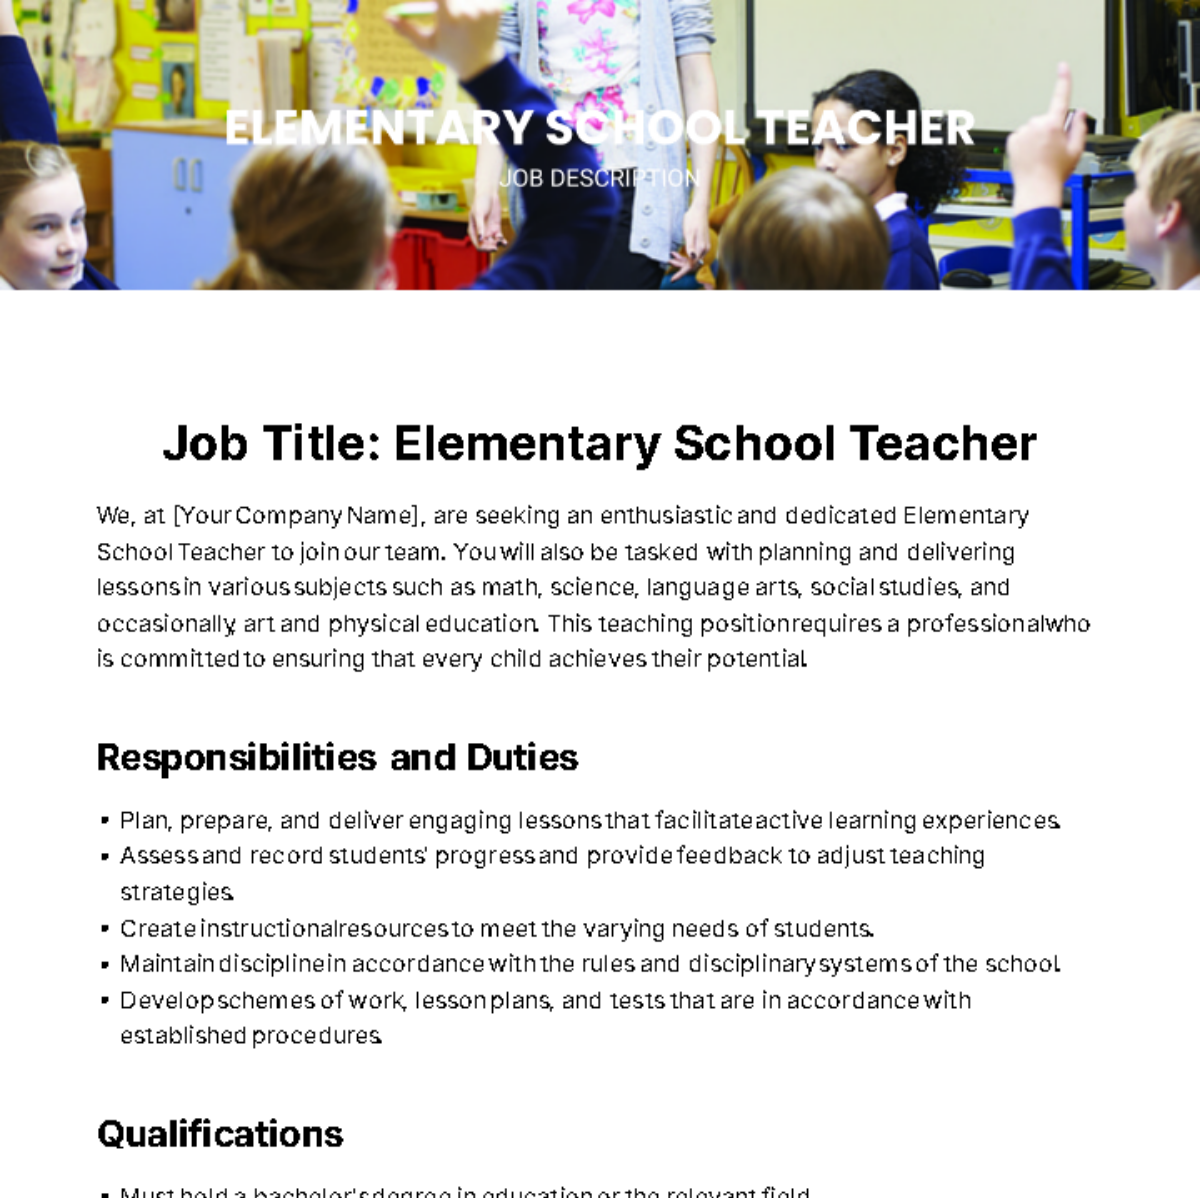 Elementary School Teacher Job Description Template